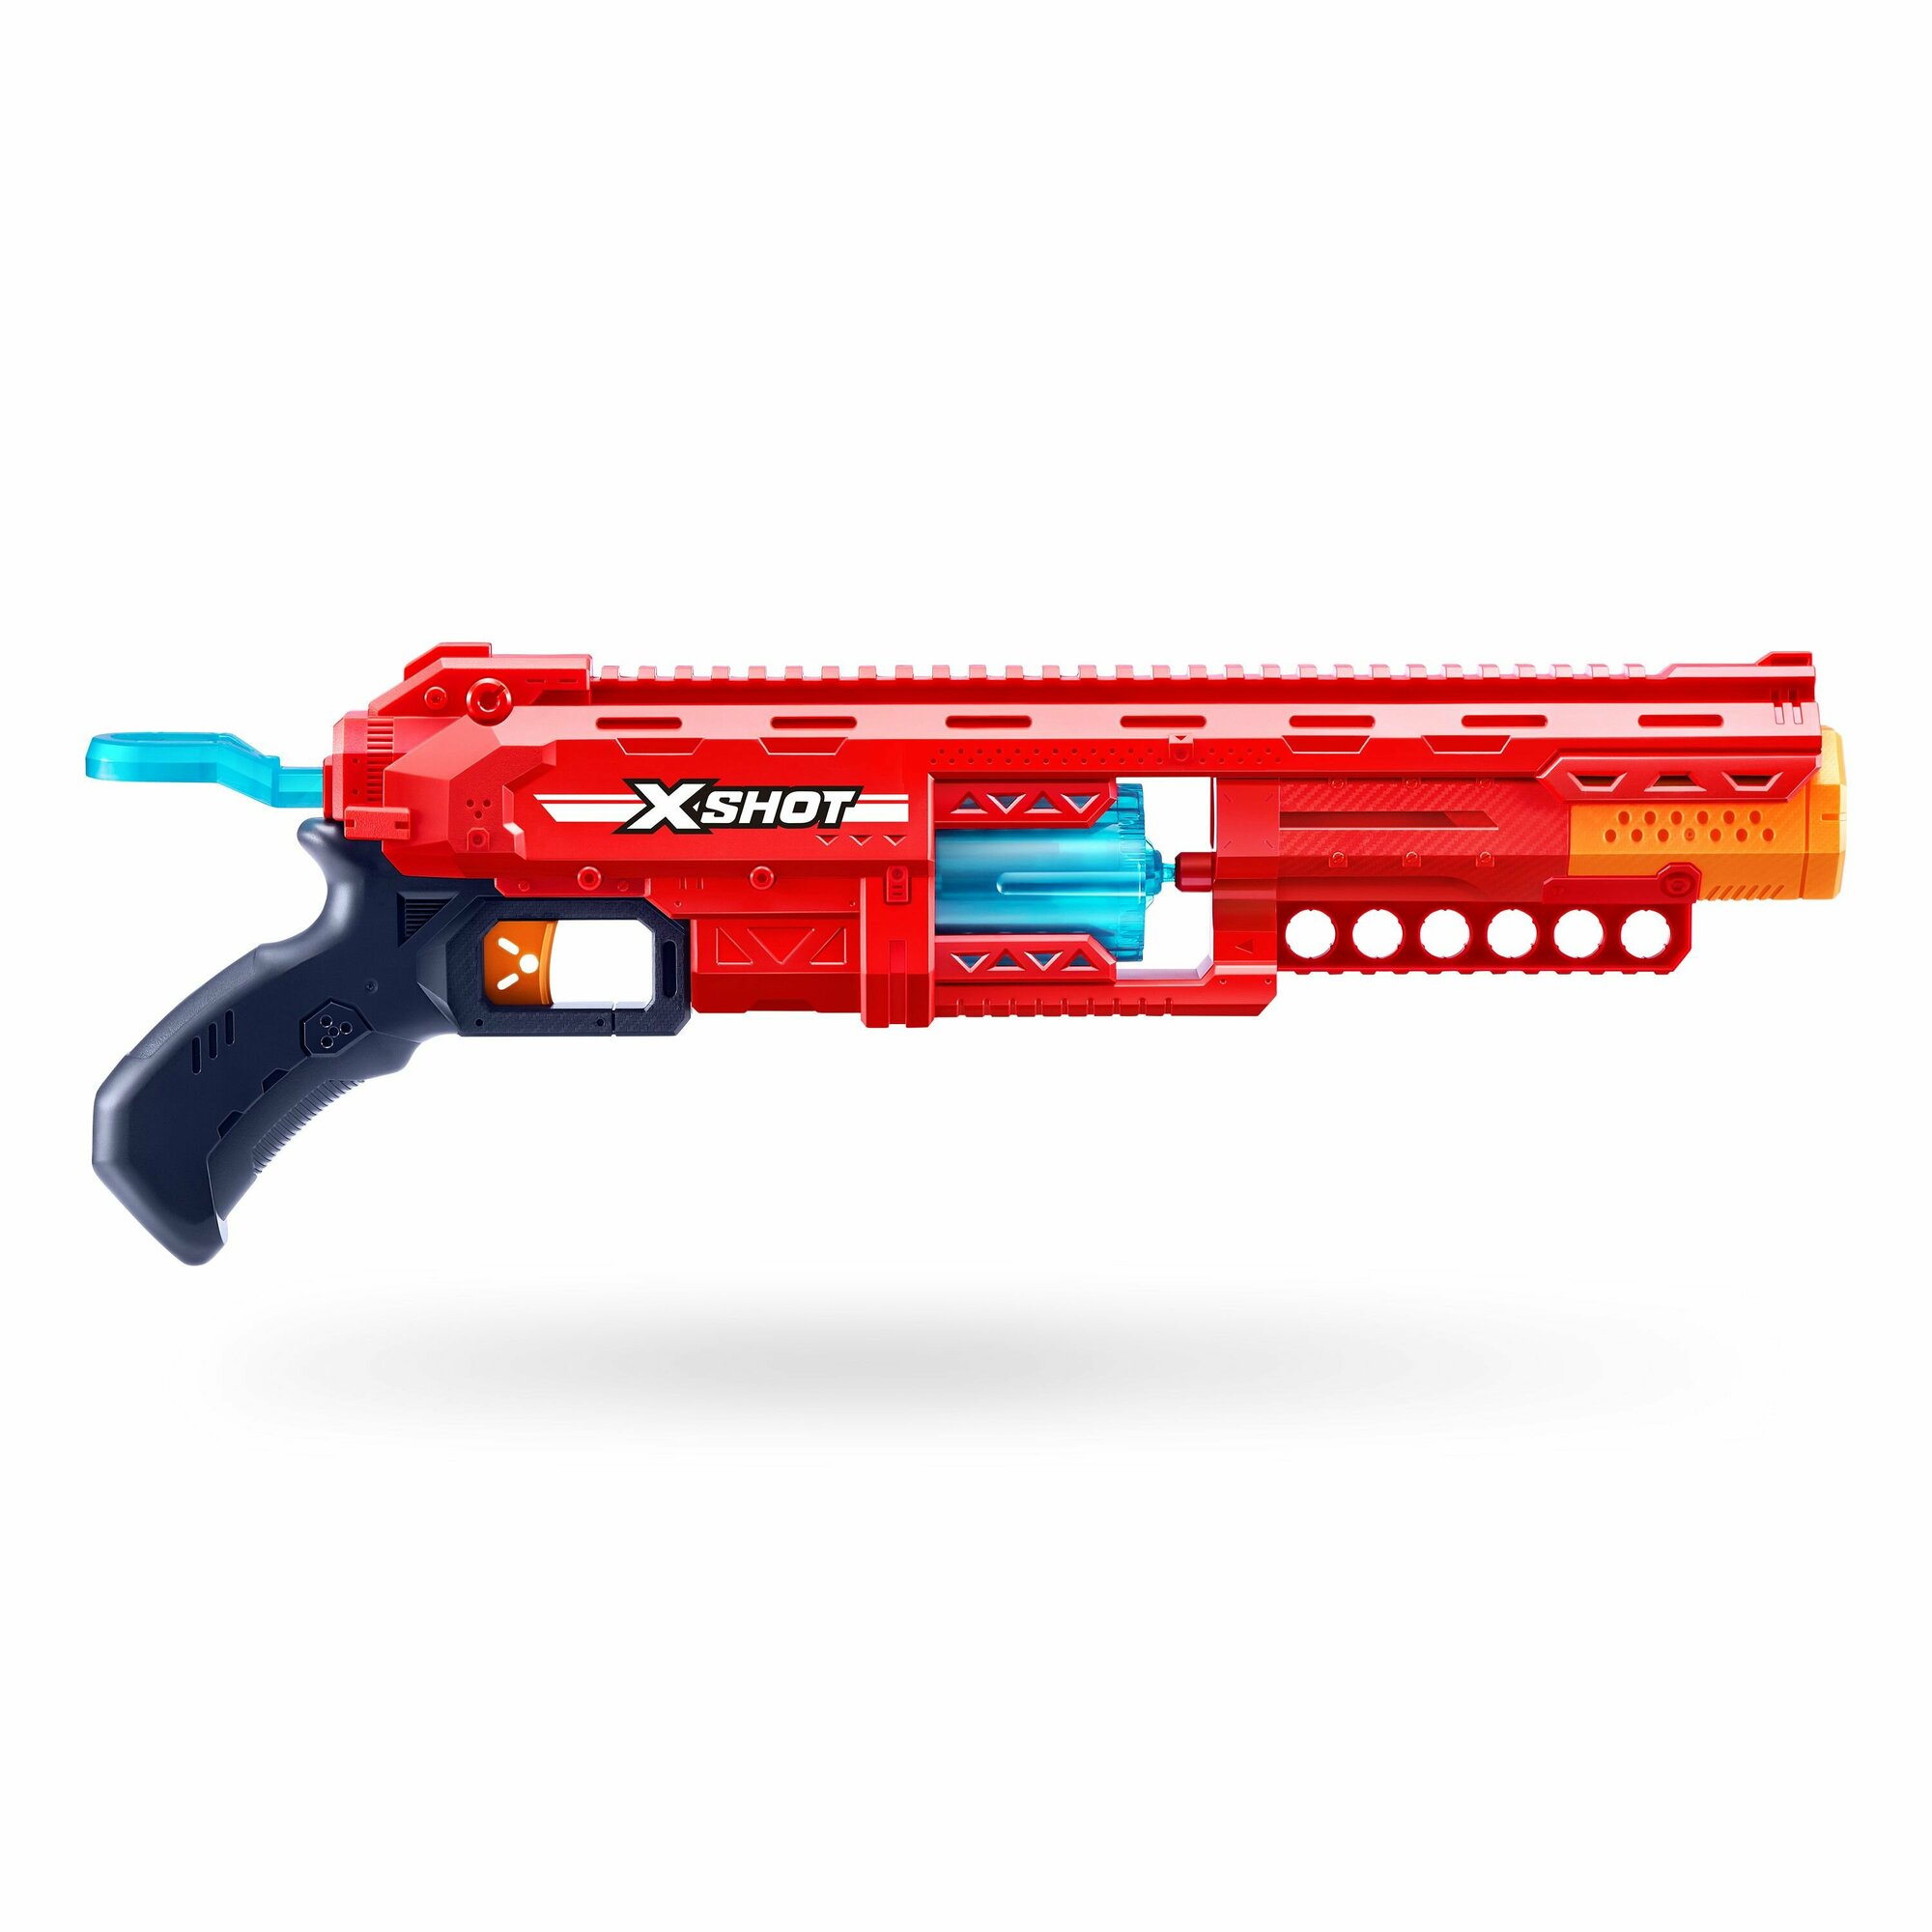 Большой автомат с мягкими пулями (16 шт) ZURU X-SHOT EXCEL CALIBER, 36675 игрушечное оружие, игрушка для мальчика, подходят стрелы нерф, игровой набор